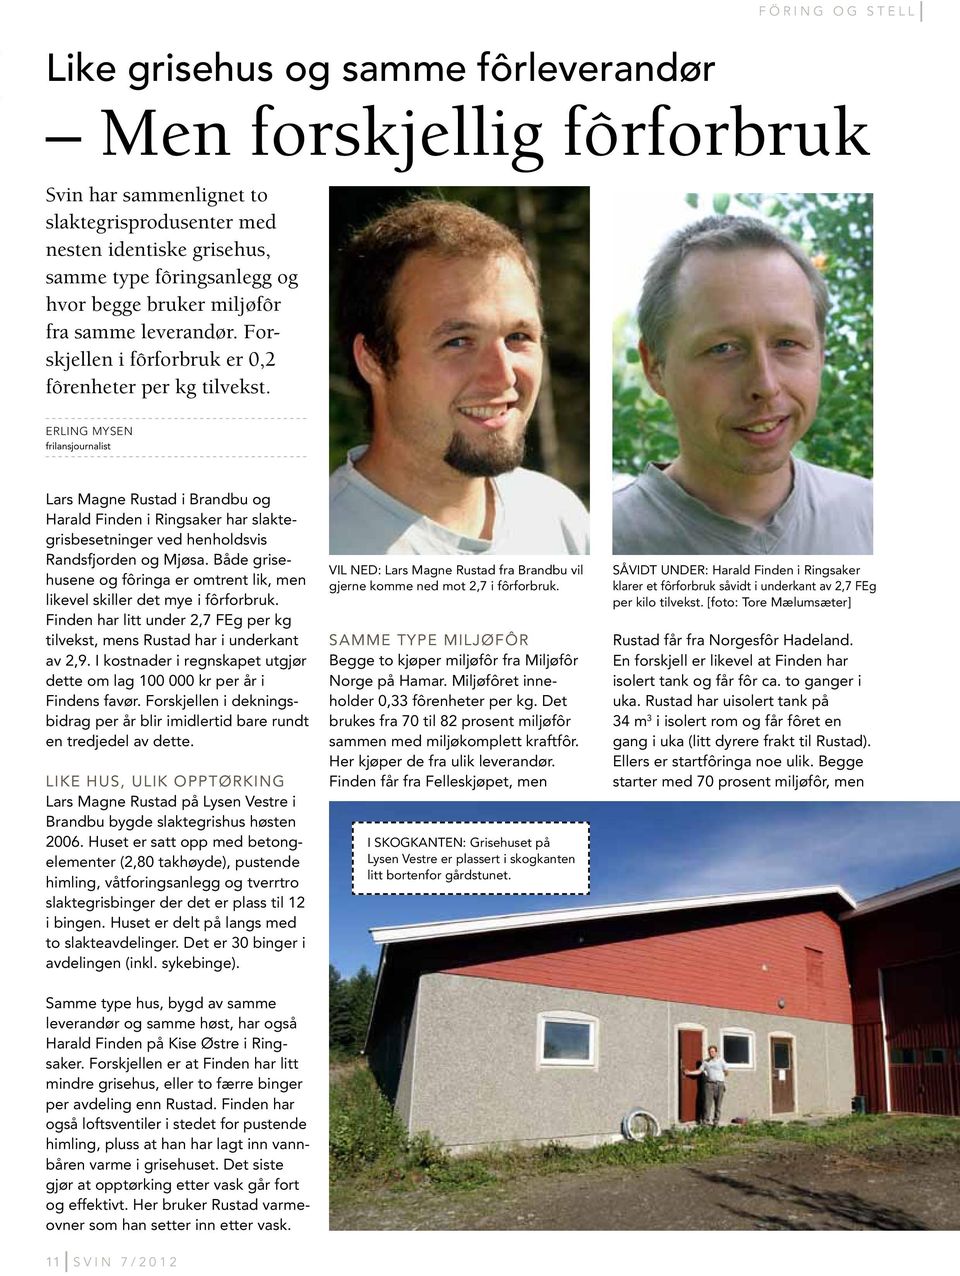 Erling Mysen frilansjournalist Lars Magne Rustad i Brandbu og Harald Finden i Ringsaker har slaktegrisbesetninger ved henholdsvis Randsfjorden og Mjøsa.